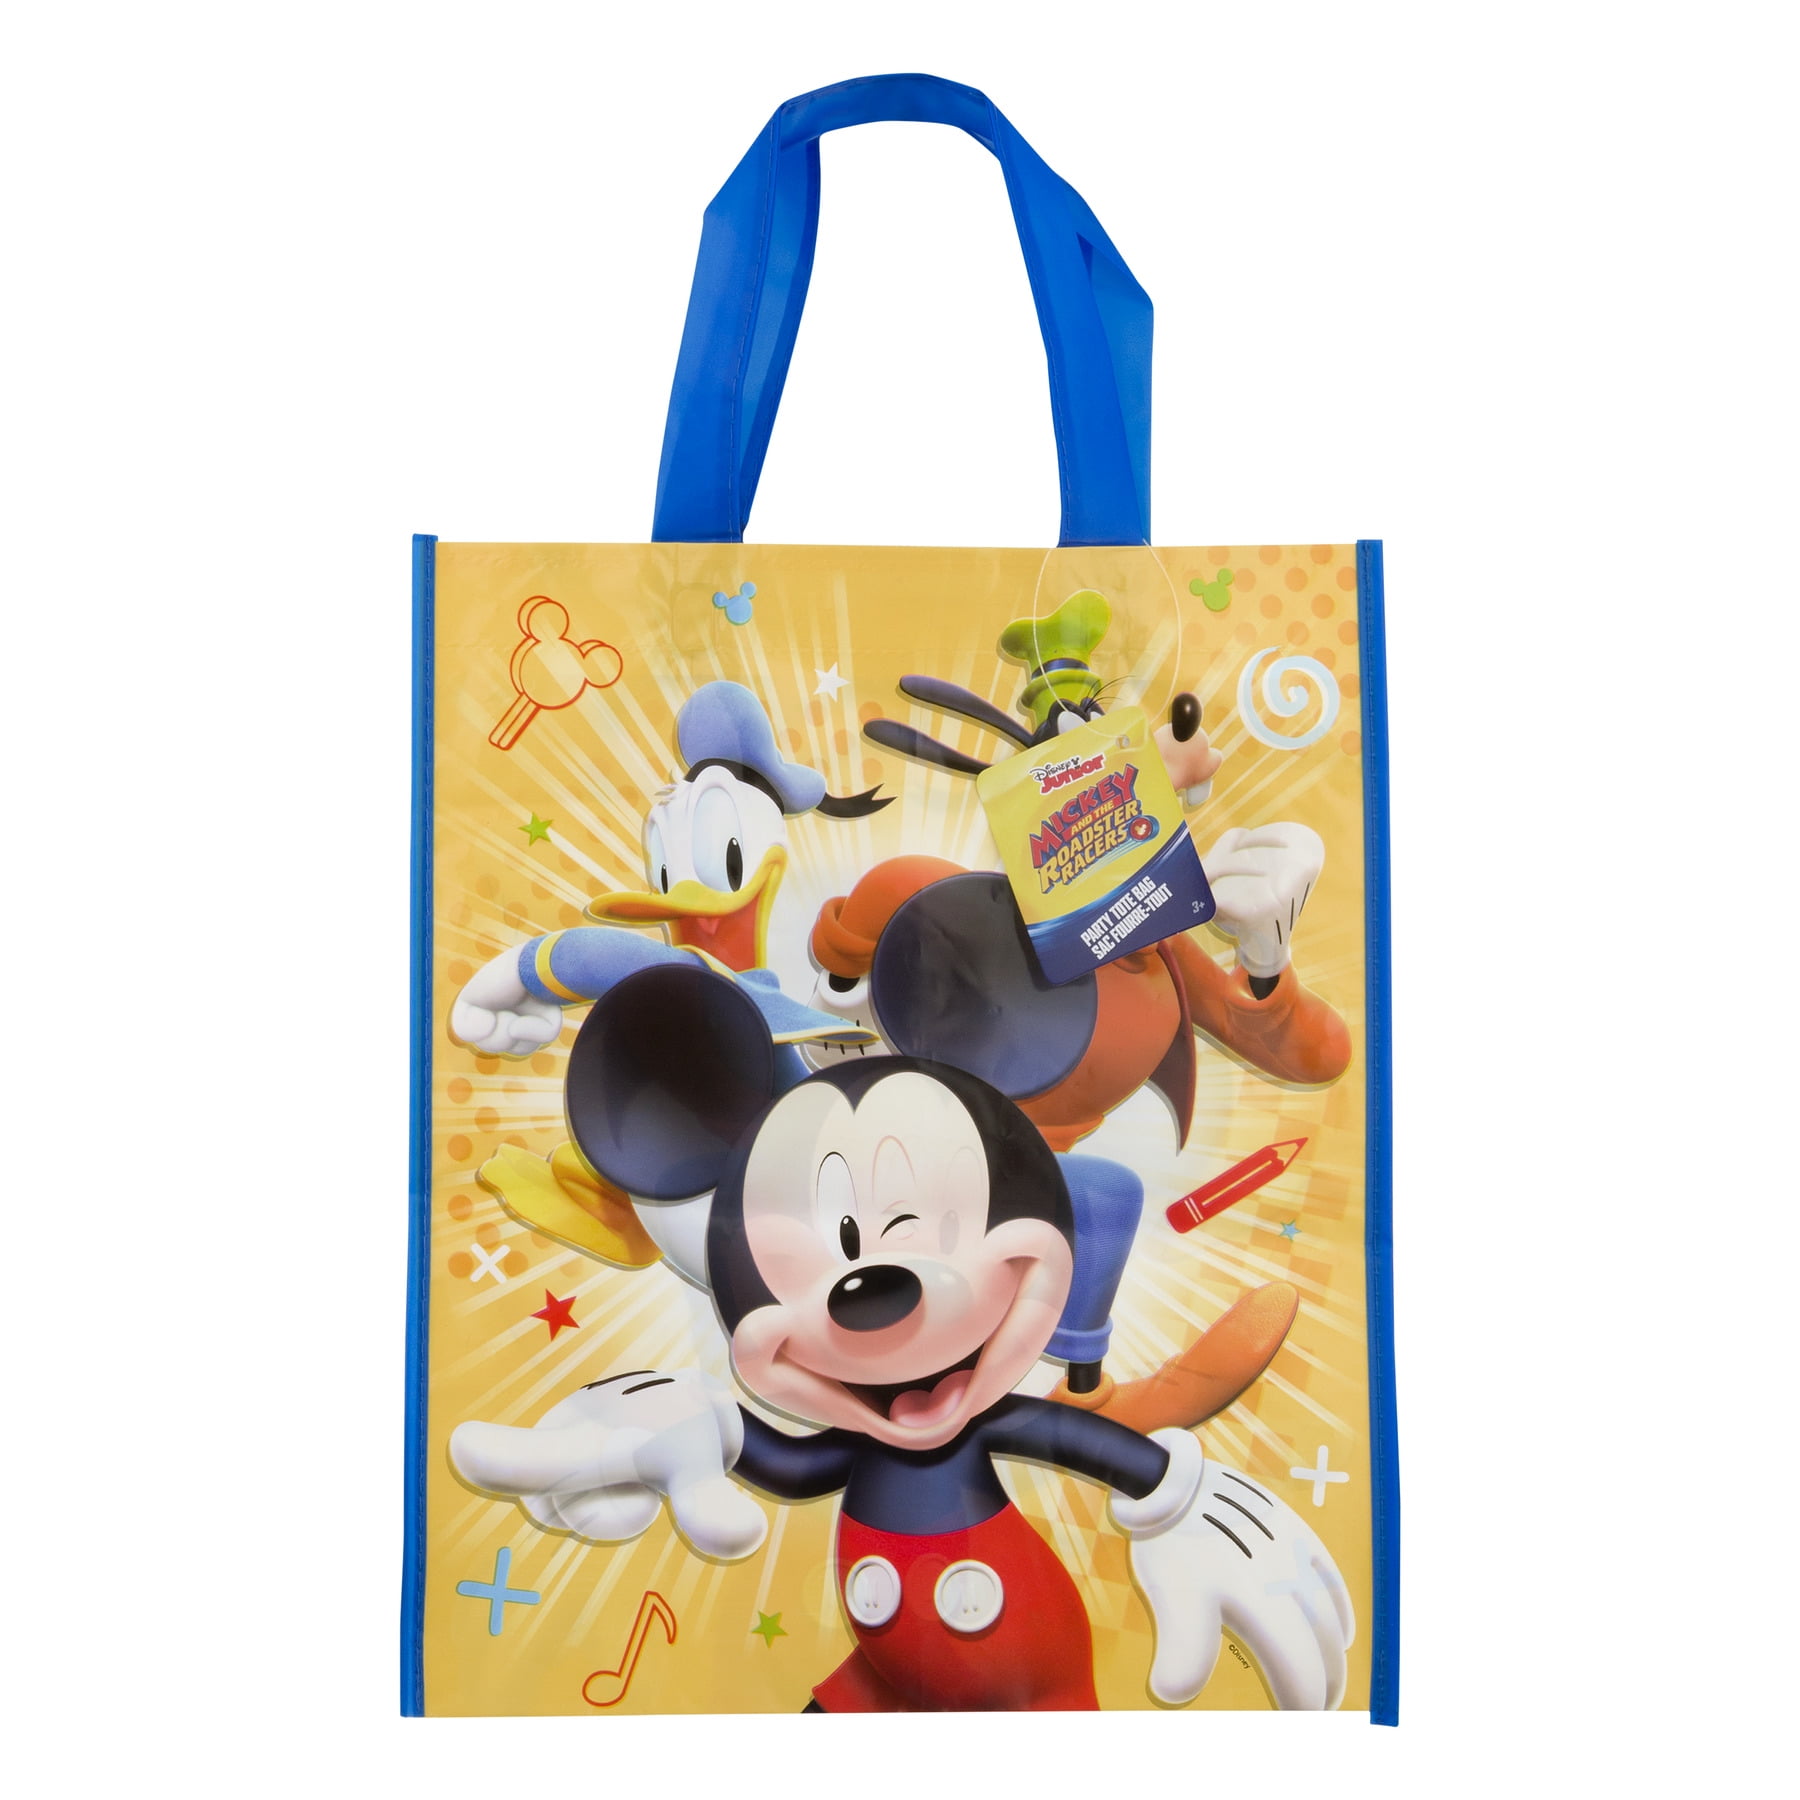 33cm x 28cm Large Plastic Mickey Mouse Party Bag Unique Party 59850